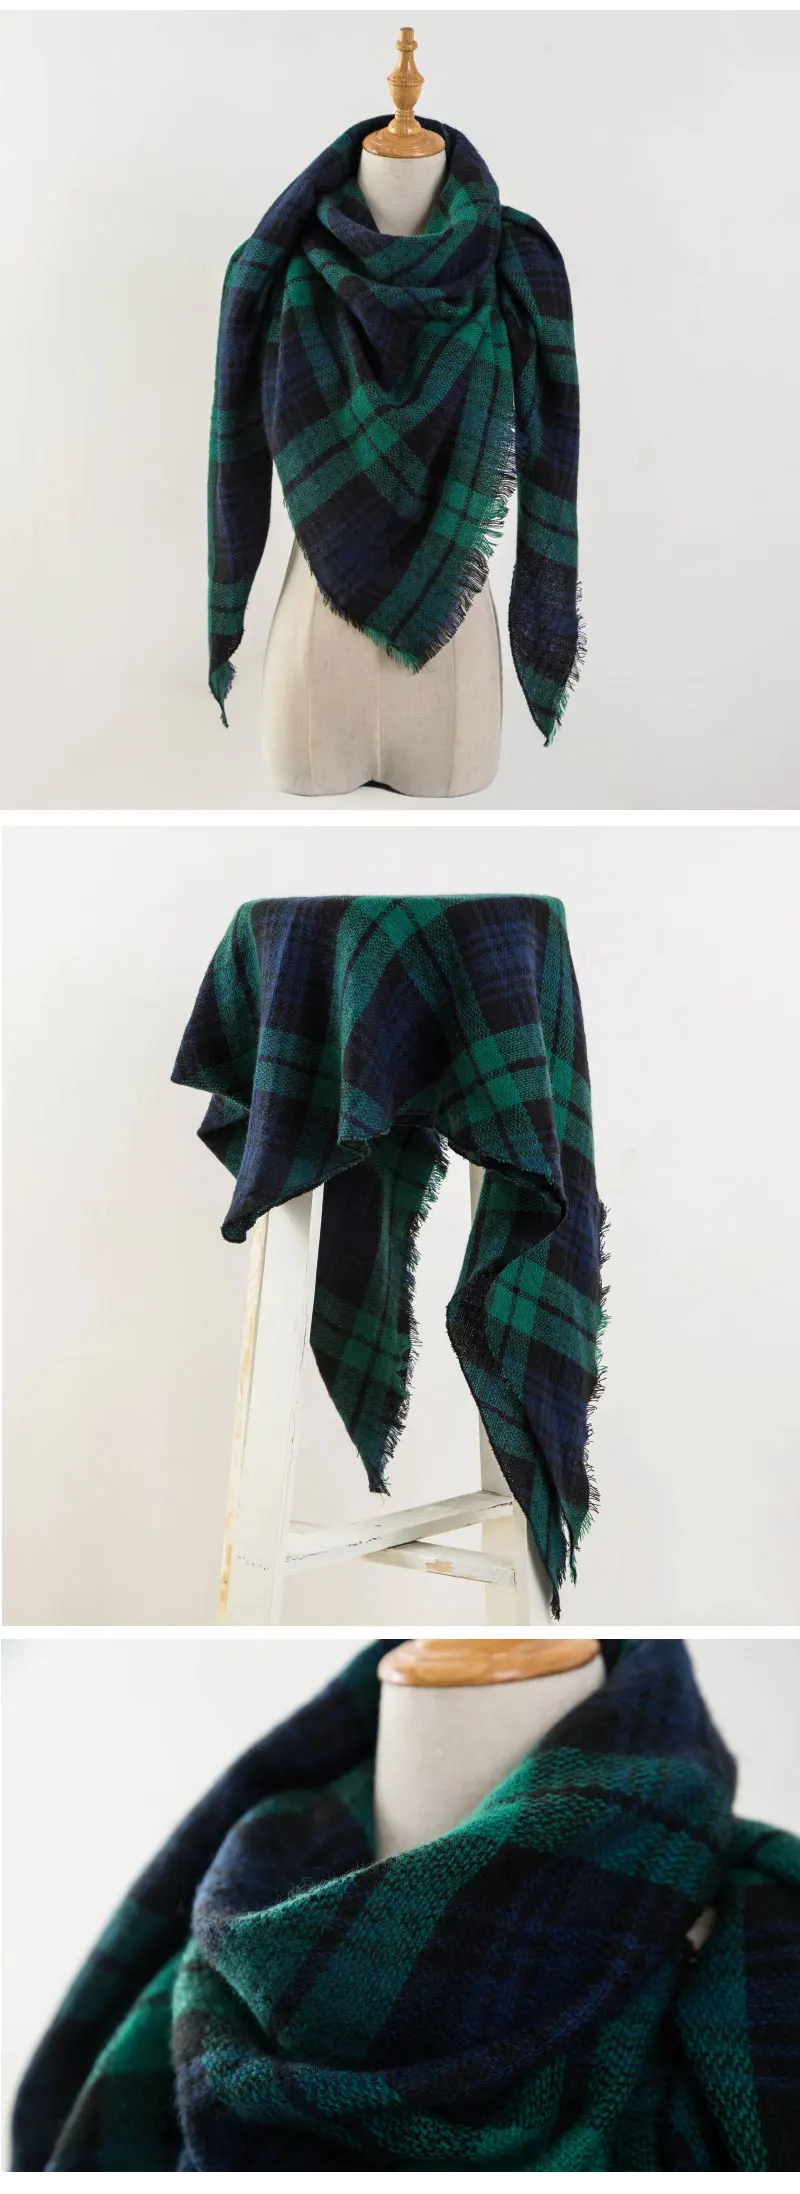 Дизайнер зимний шарф женский кашемировый шарфы платок качество хорошее теплый шерсть шарфы женские,модные плед шарфы платки палантины,большой шарф в форме треугольника 140*140*210CM